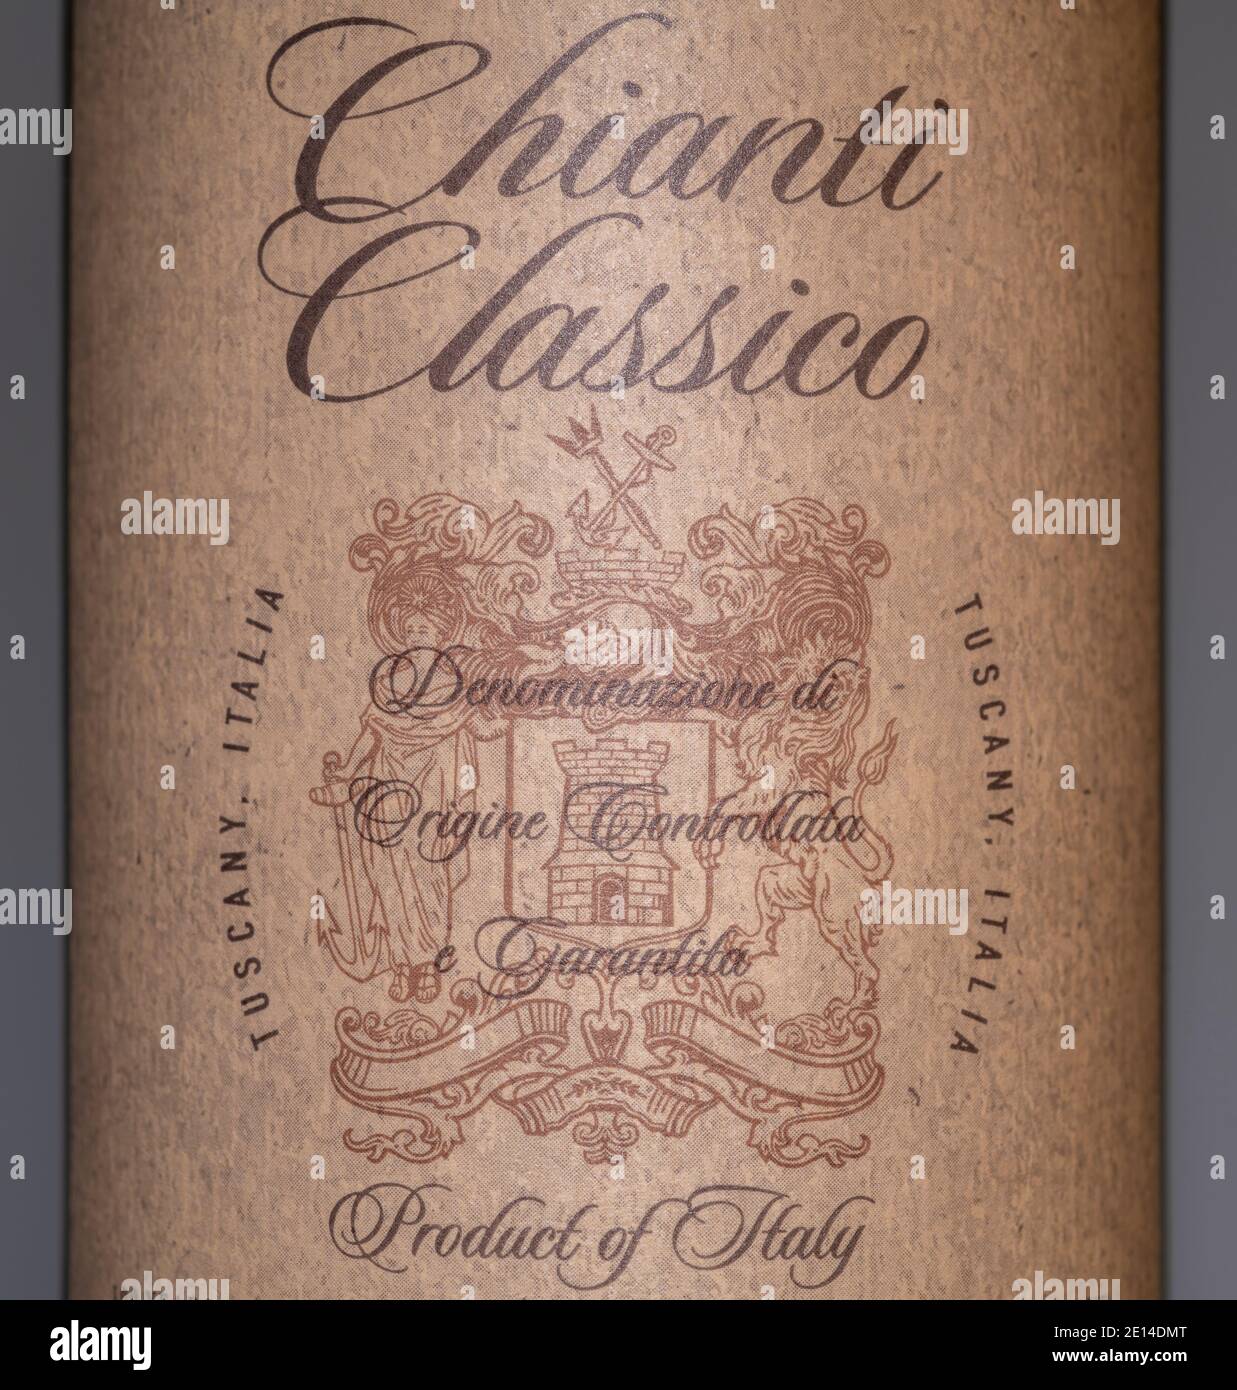 Chianti Classico Italian red wine bottle label closeup Stock Photo